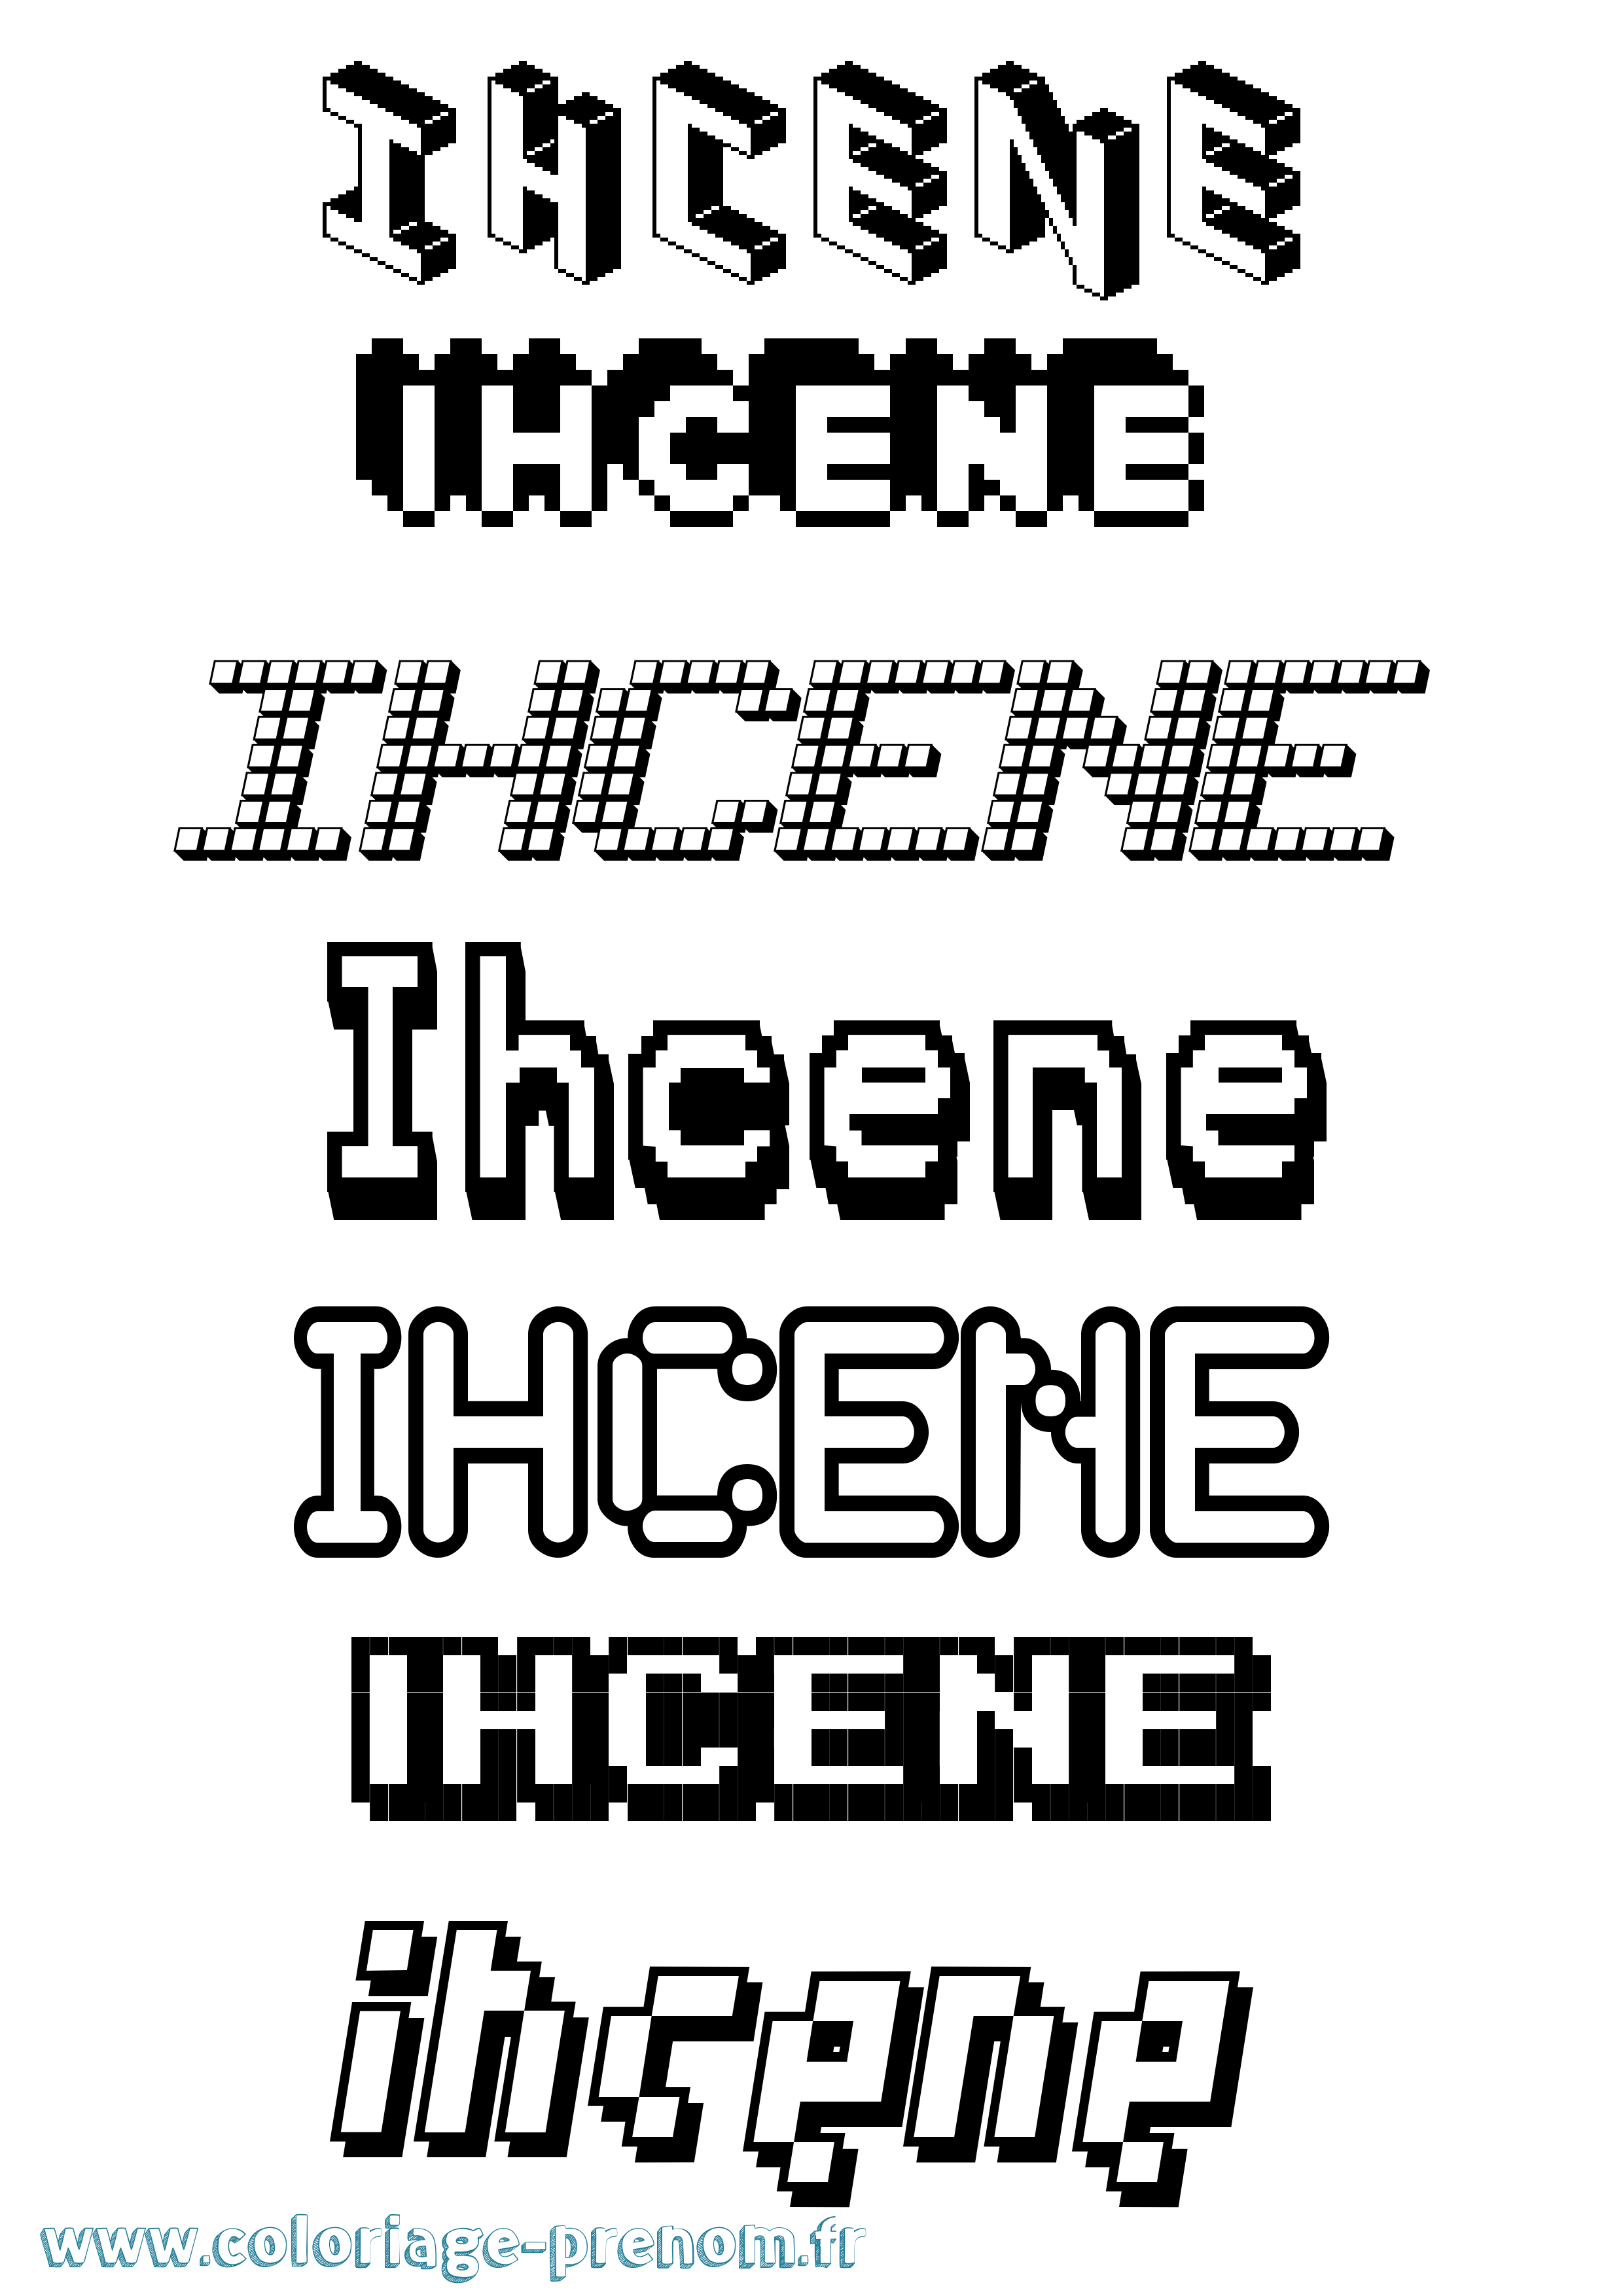 Coloriage prénom Ihcene Pixel